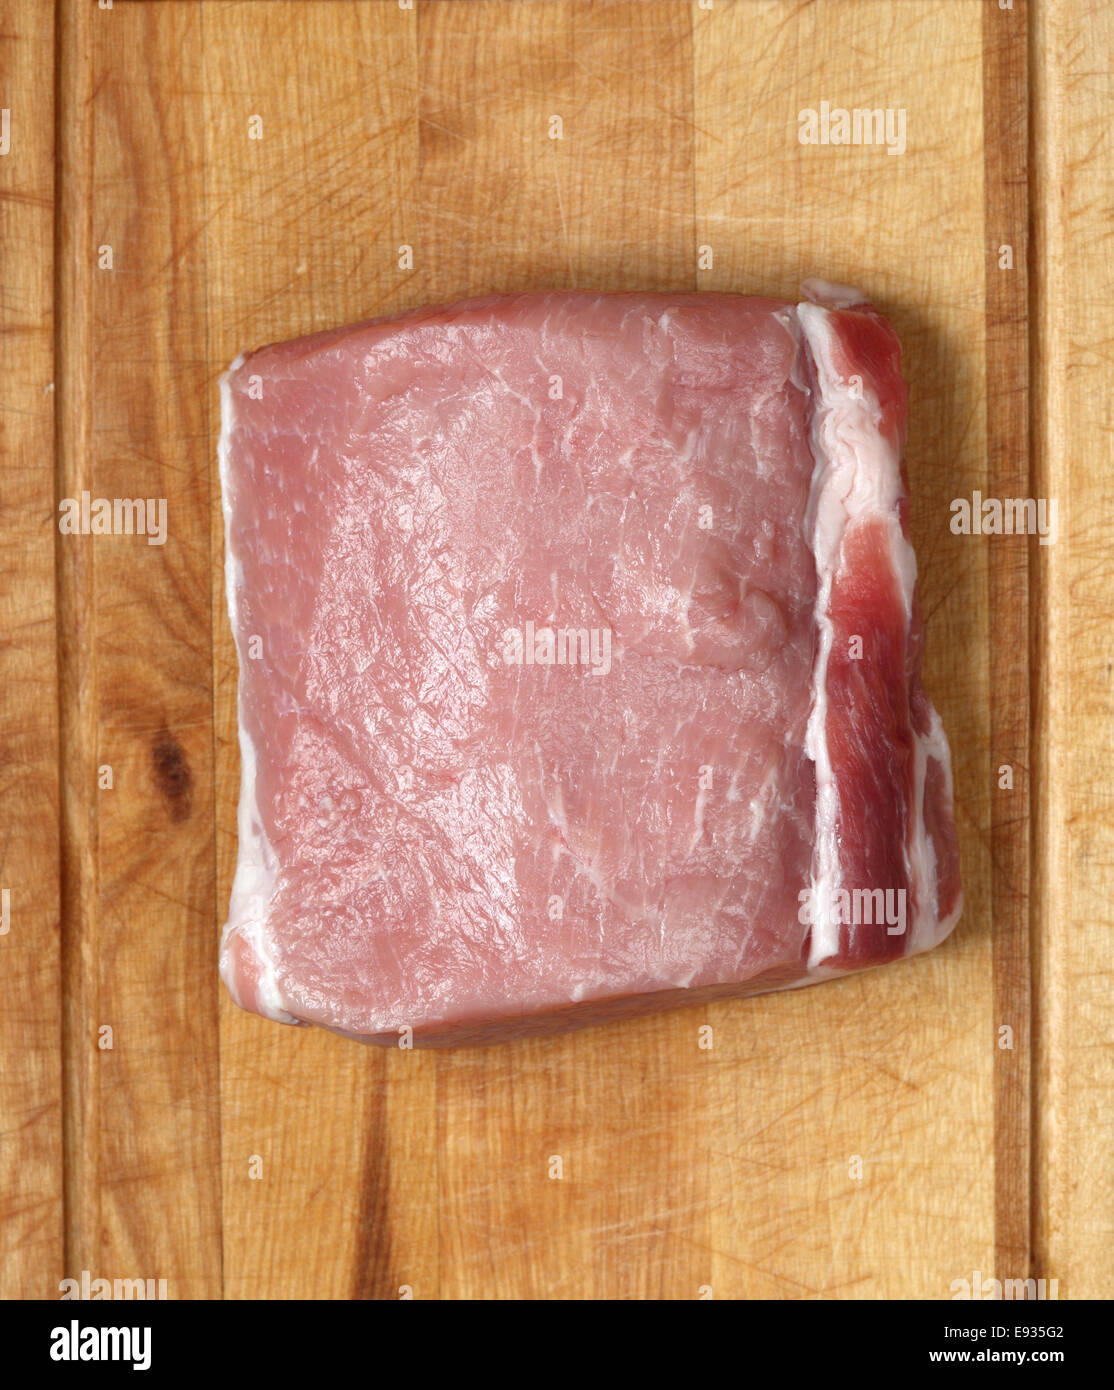 Lomo de cerdo cruda sobre un fondo de madera Foto de stock